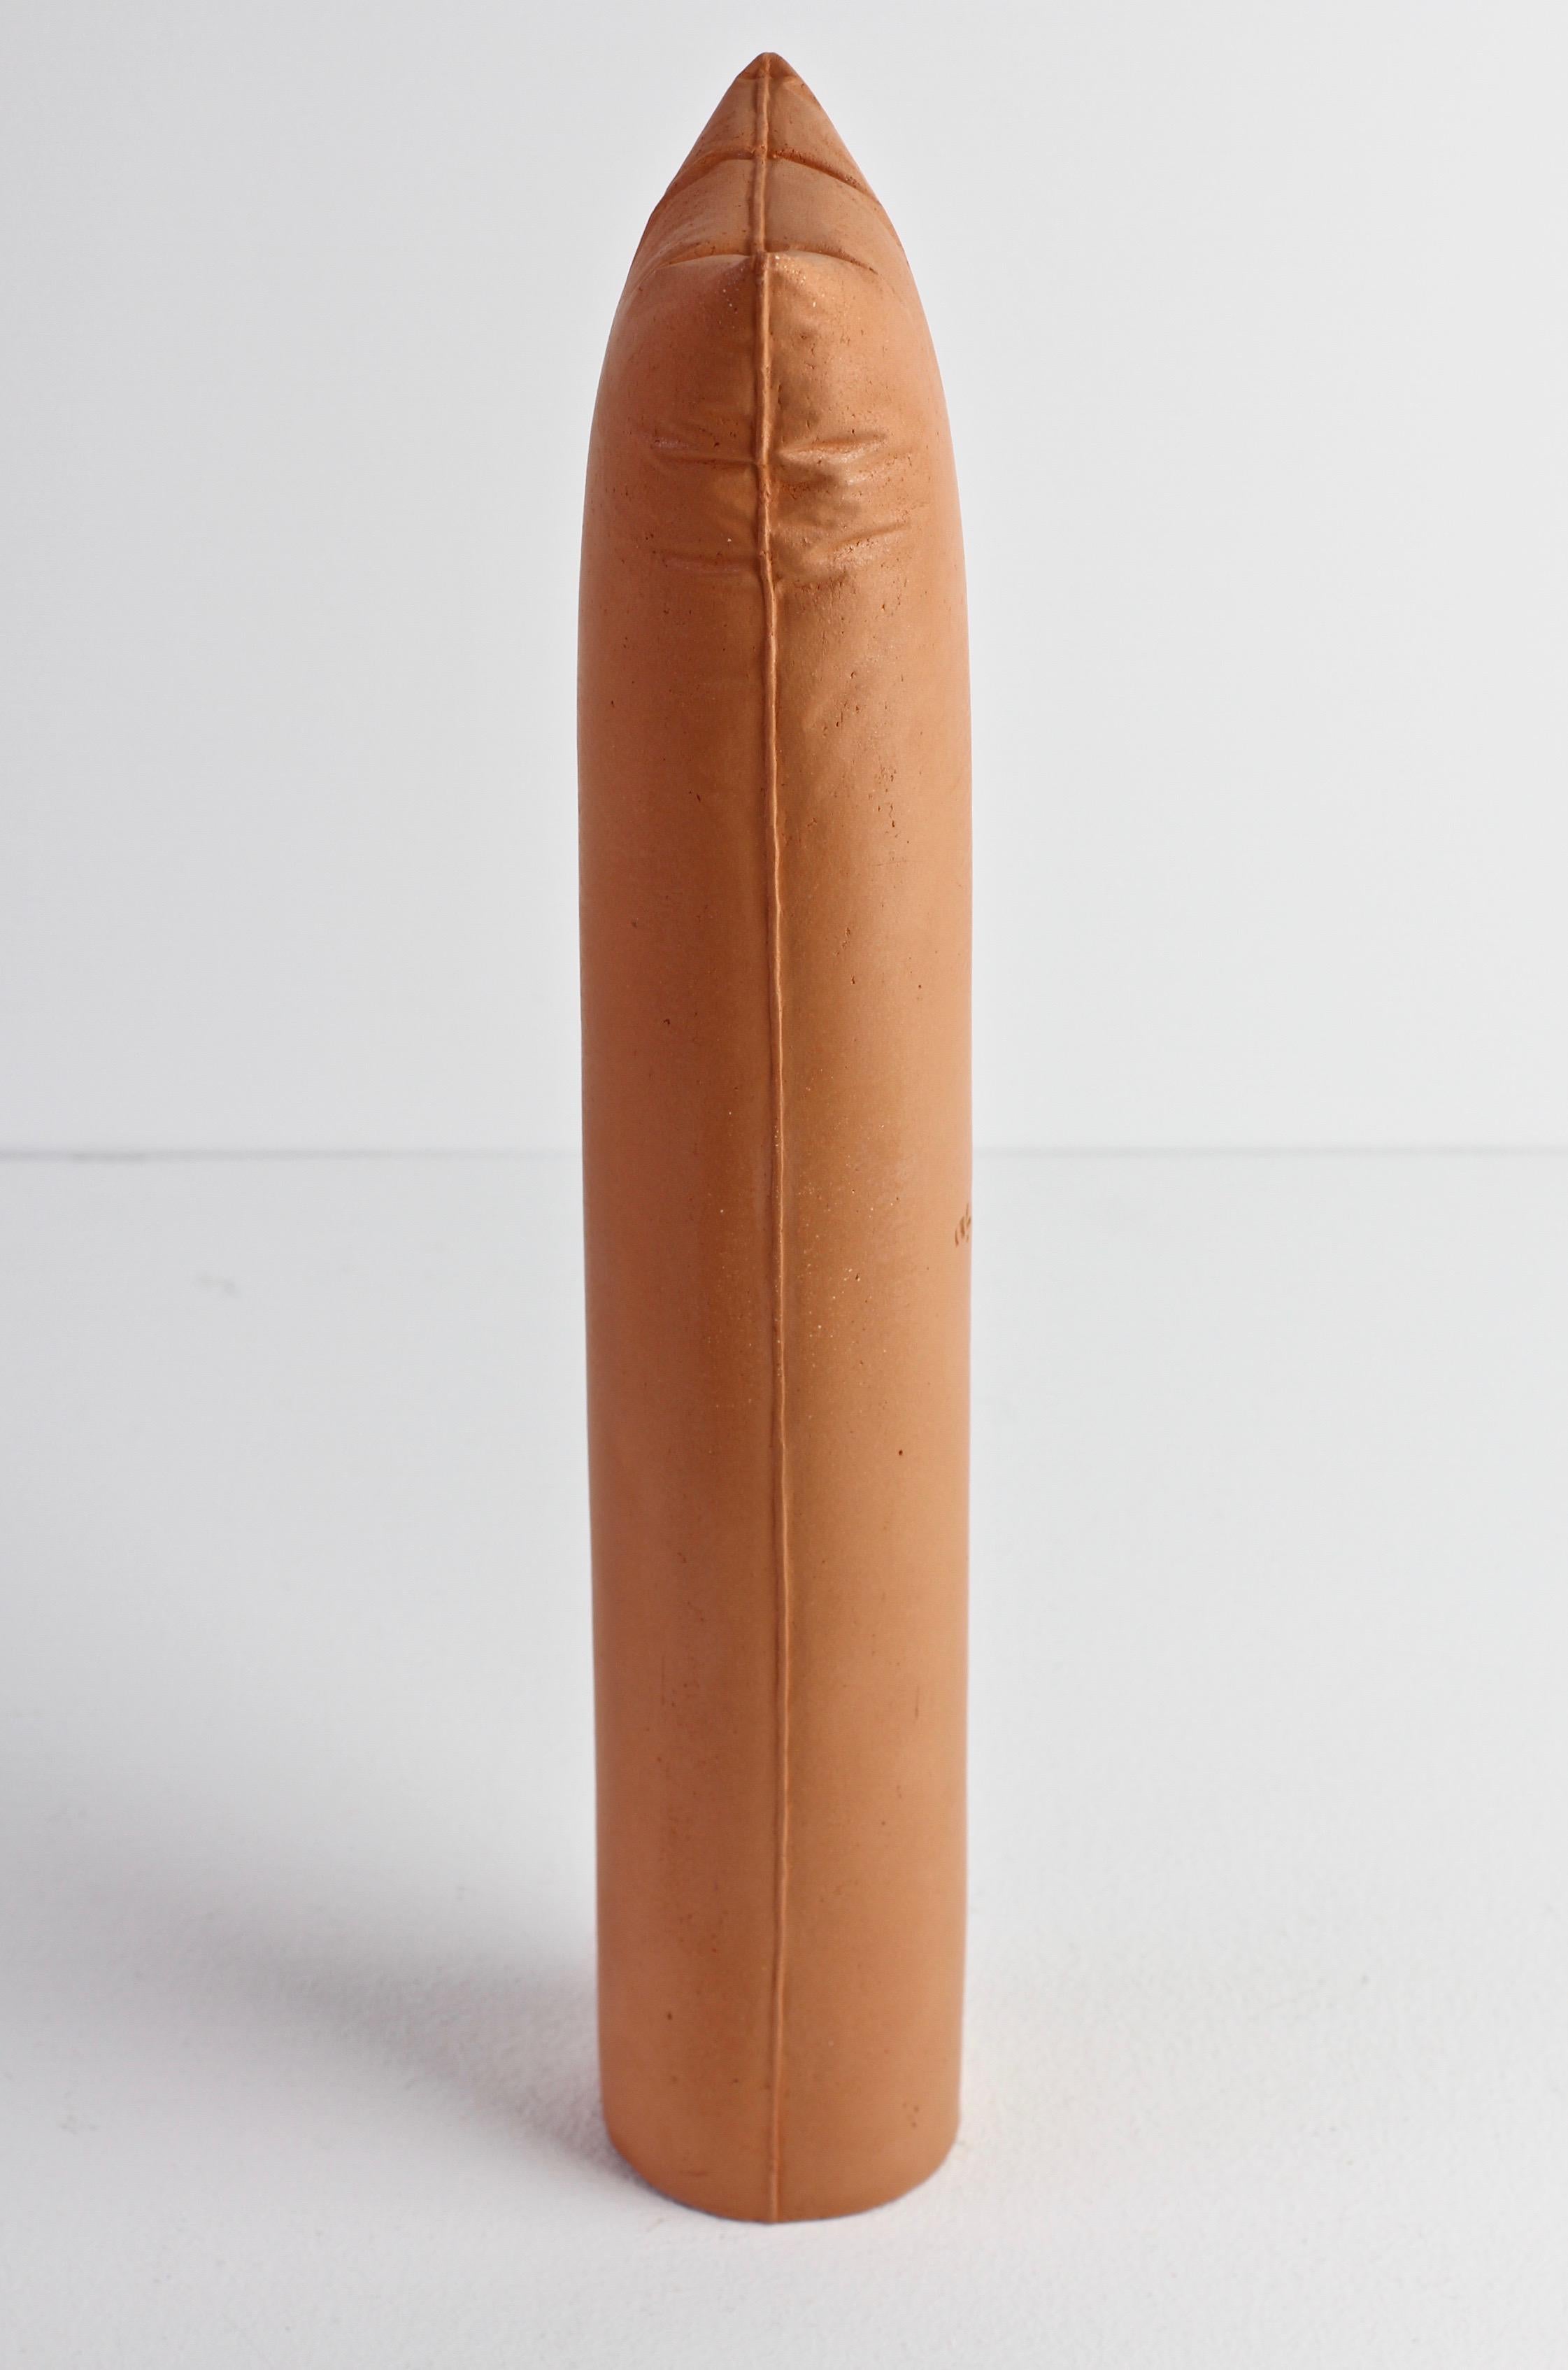 Late 20th Century Gabriele Puetz Pillow Pillar 'Nichts' Vintage German Art Pottery Sculpture # 5/7 For Sale